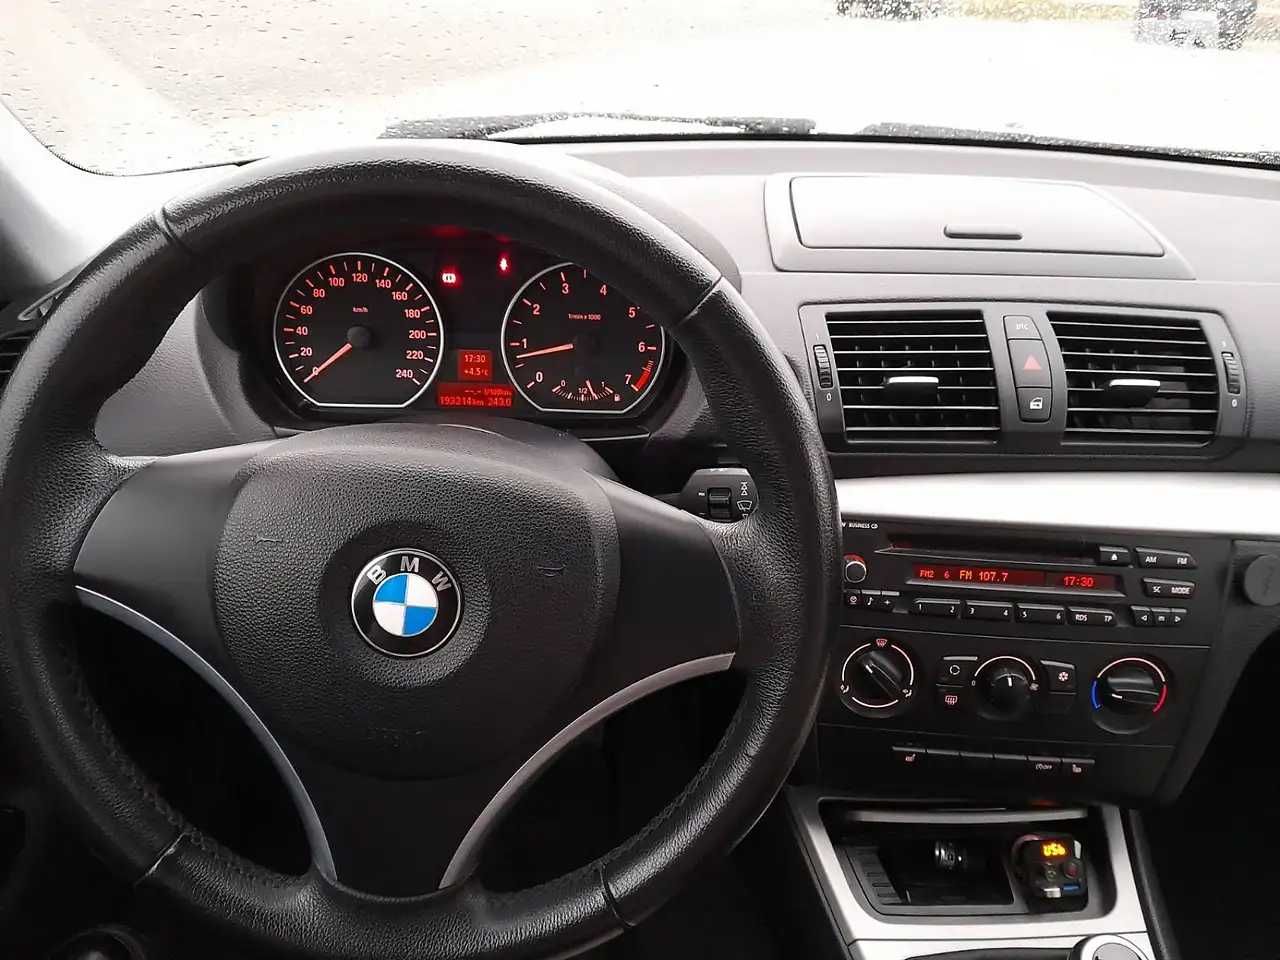 BMW 1 Series 2009 E87 (FL) • 116i AT (122 к.с.)